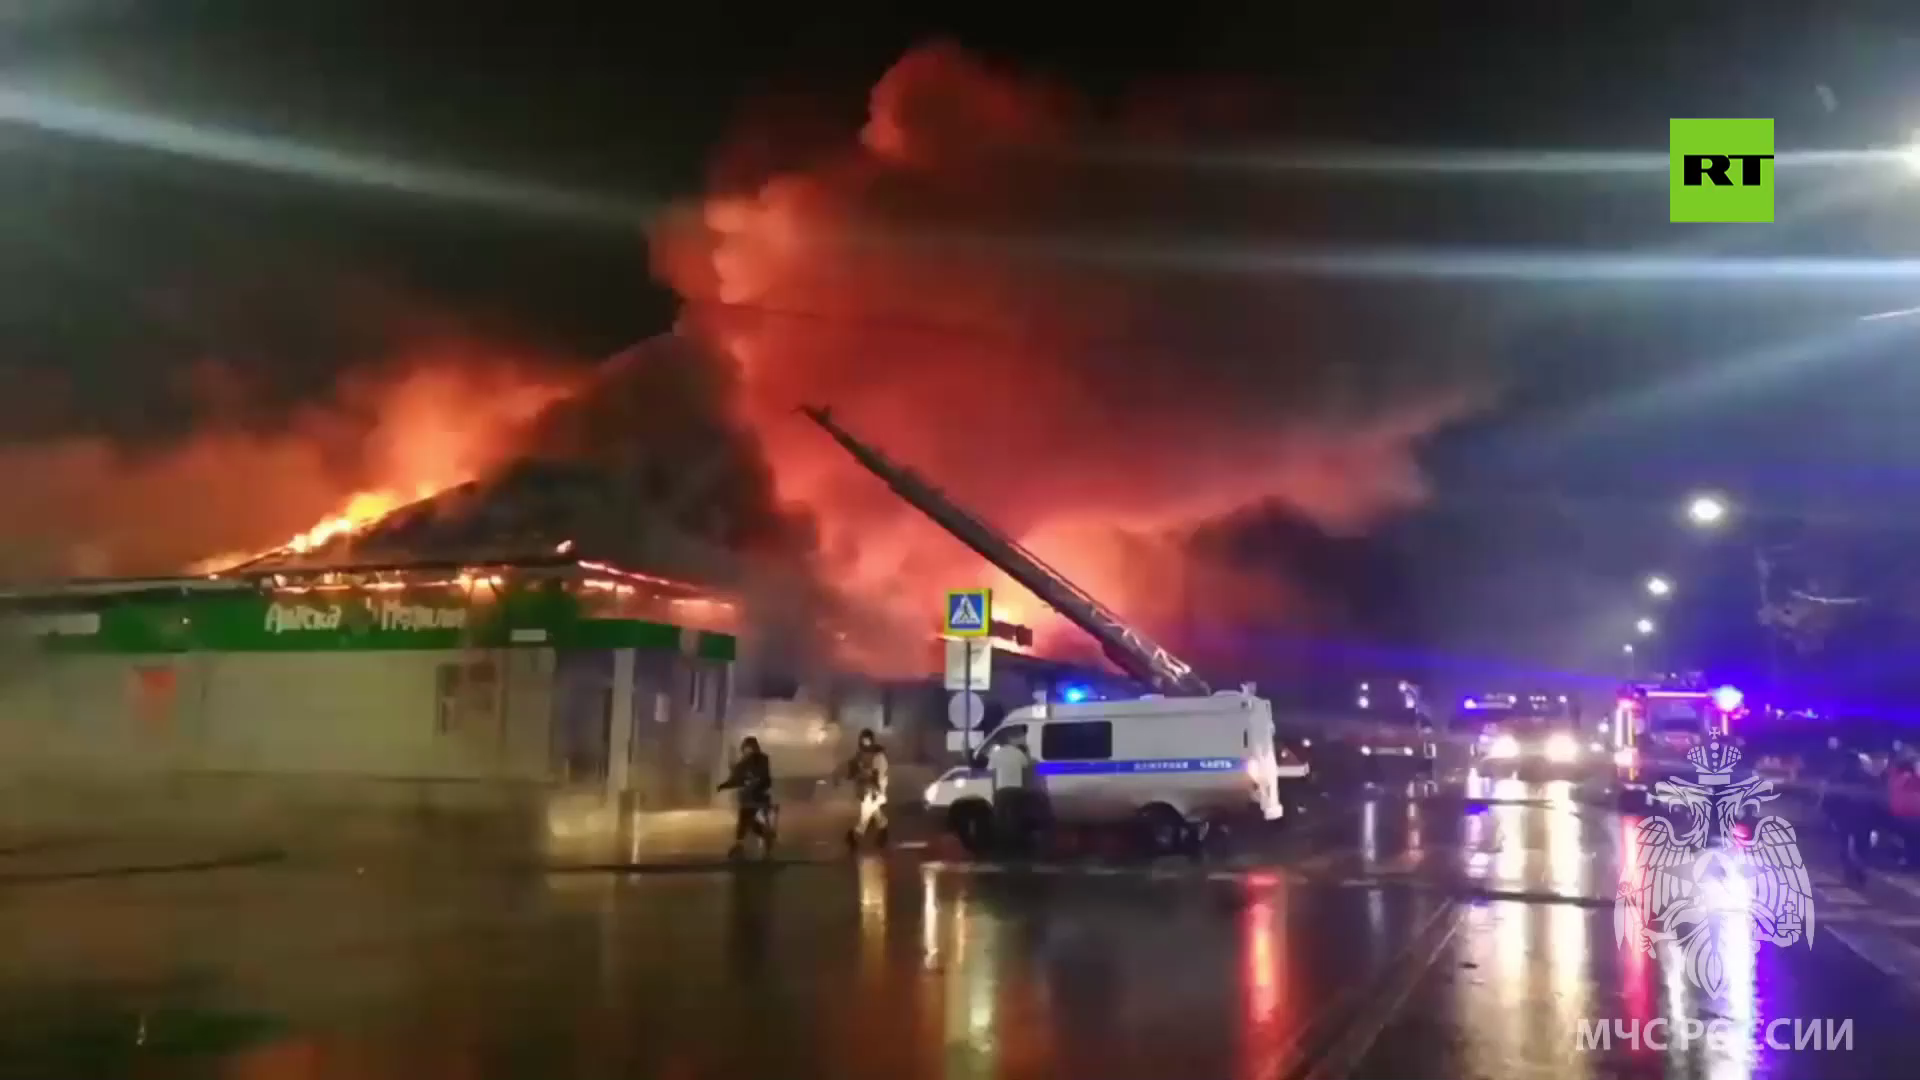 مشاهد لحريق ضخم وآثاره بملهى ليلي في كوستروما الروسية